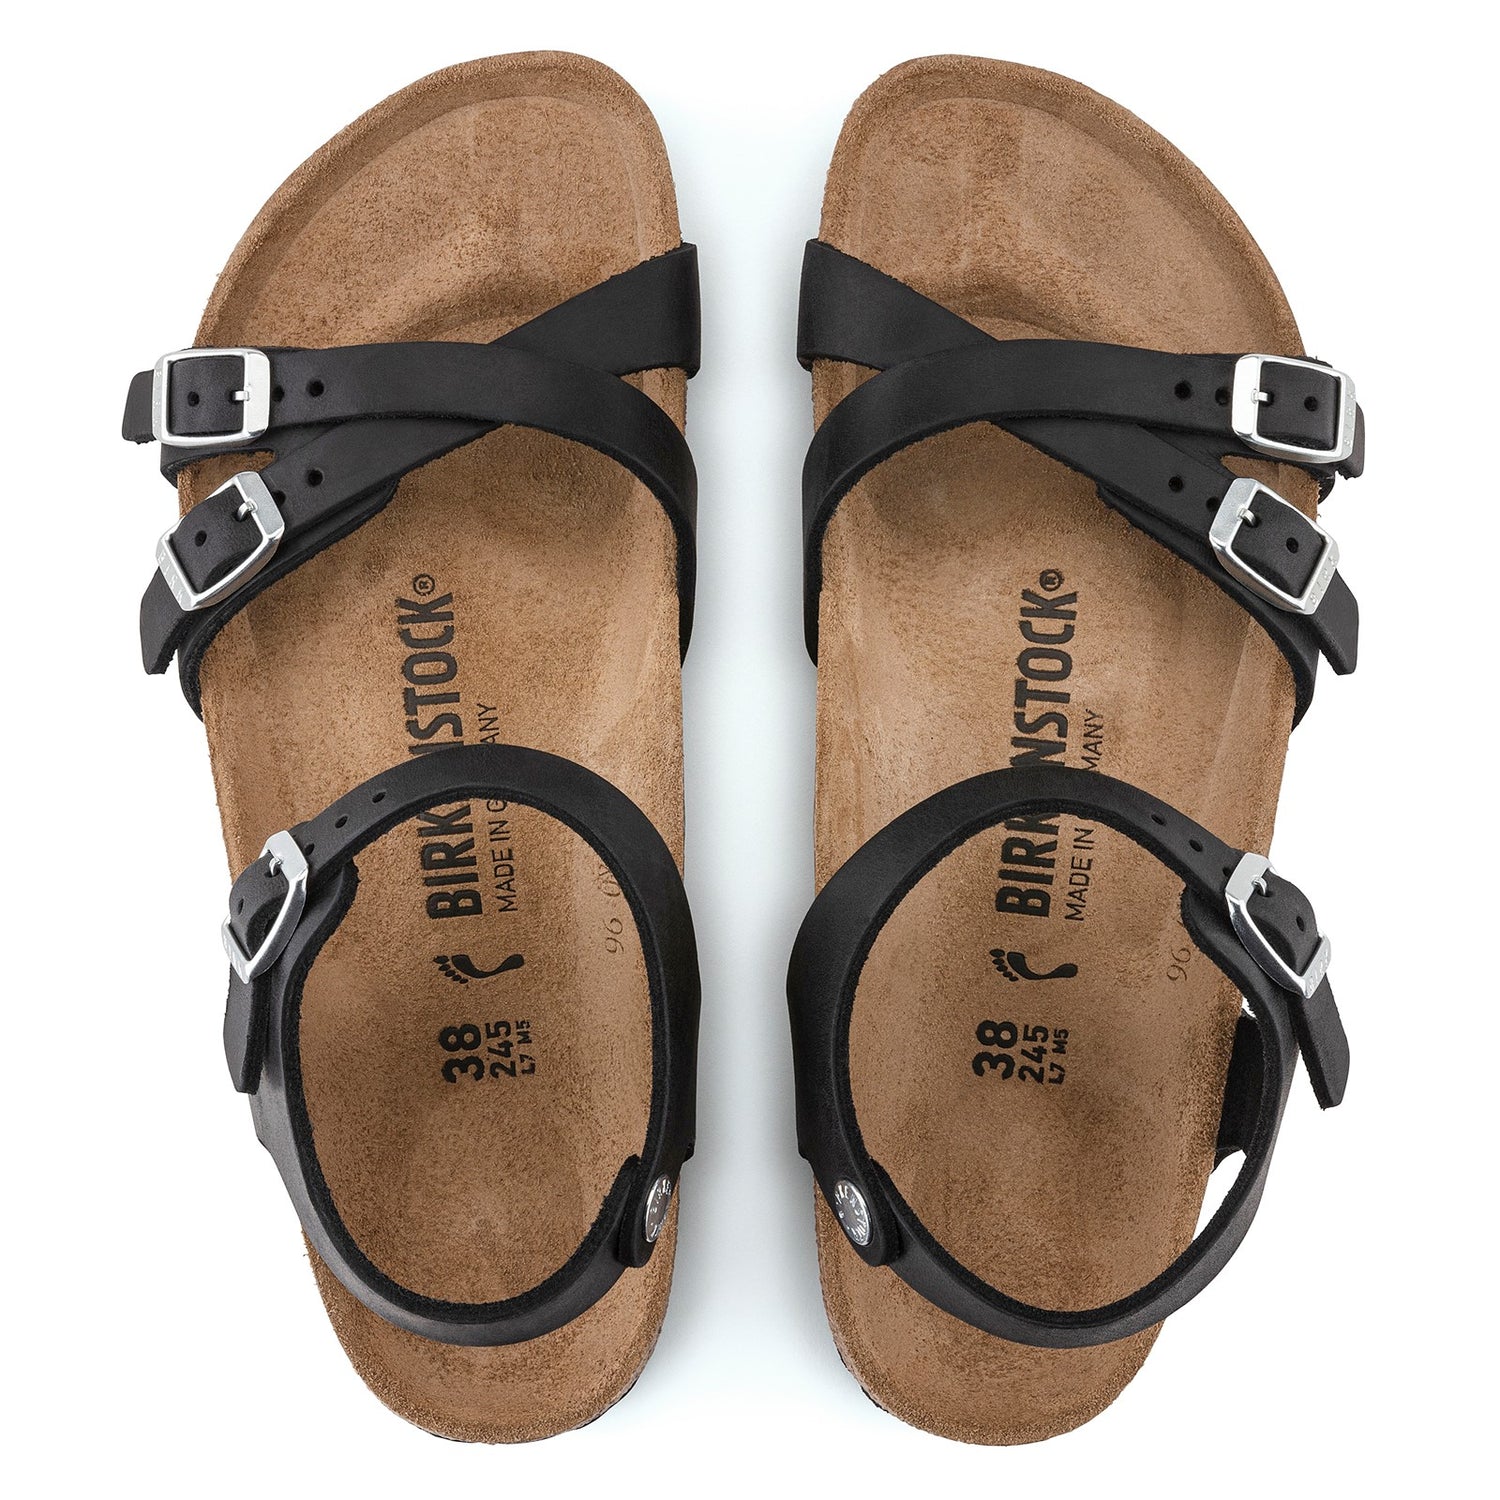 Peltz Shoes  Women's Birkenstock Kumba Sandal - Regular Width BLACK OILED 1021 506 R